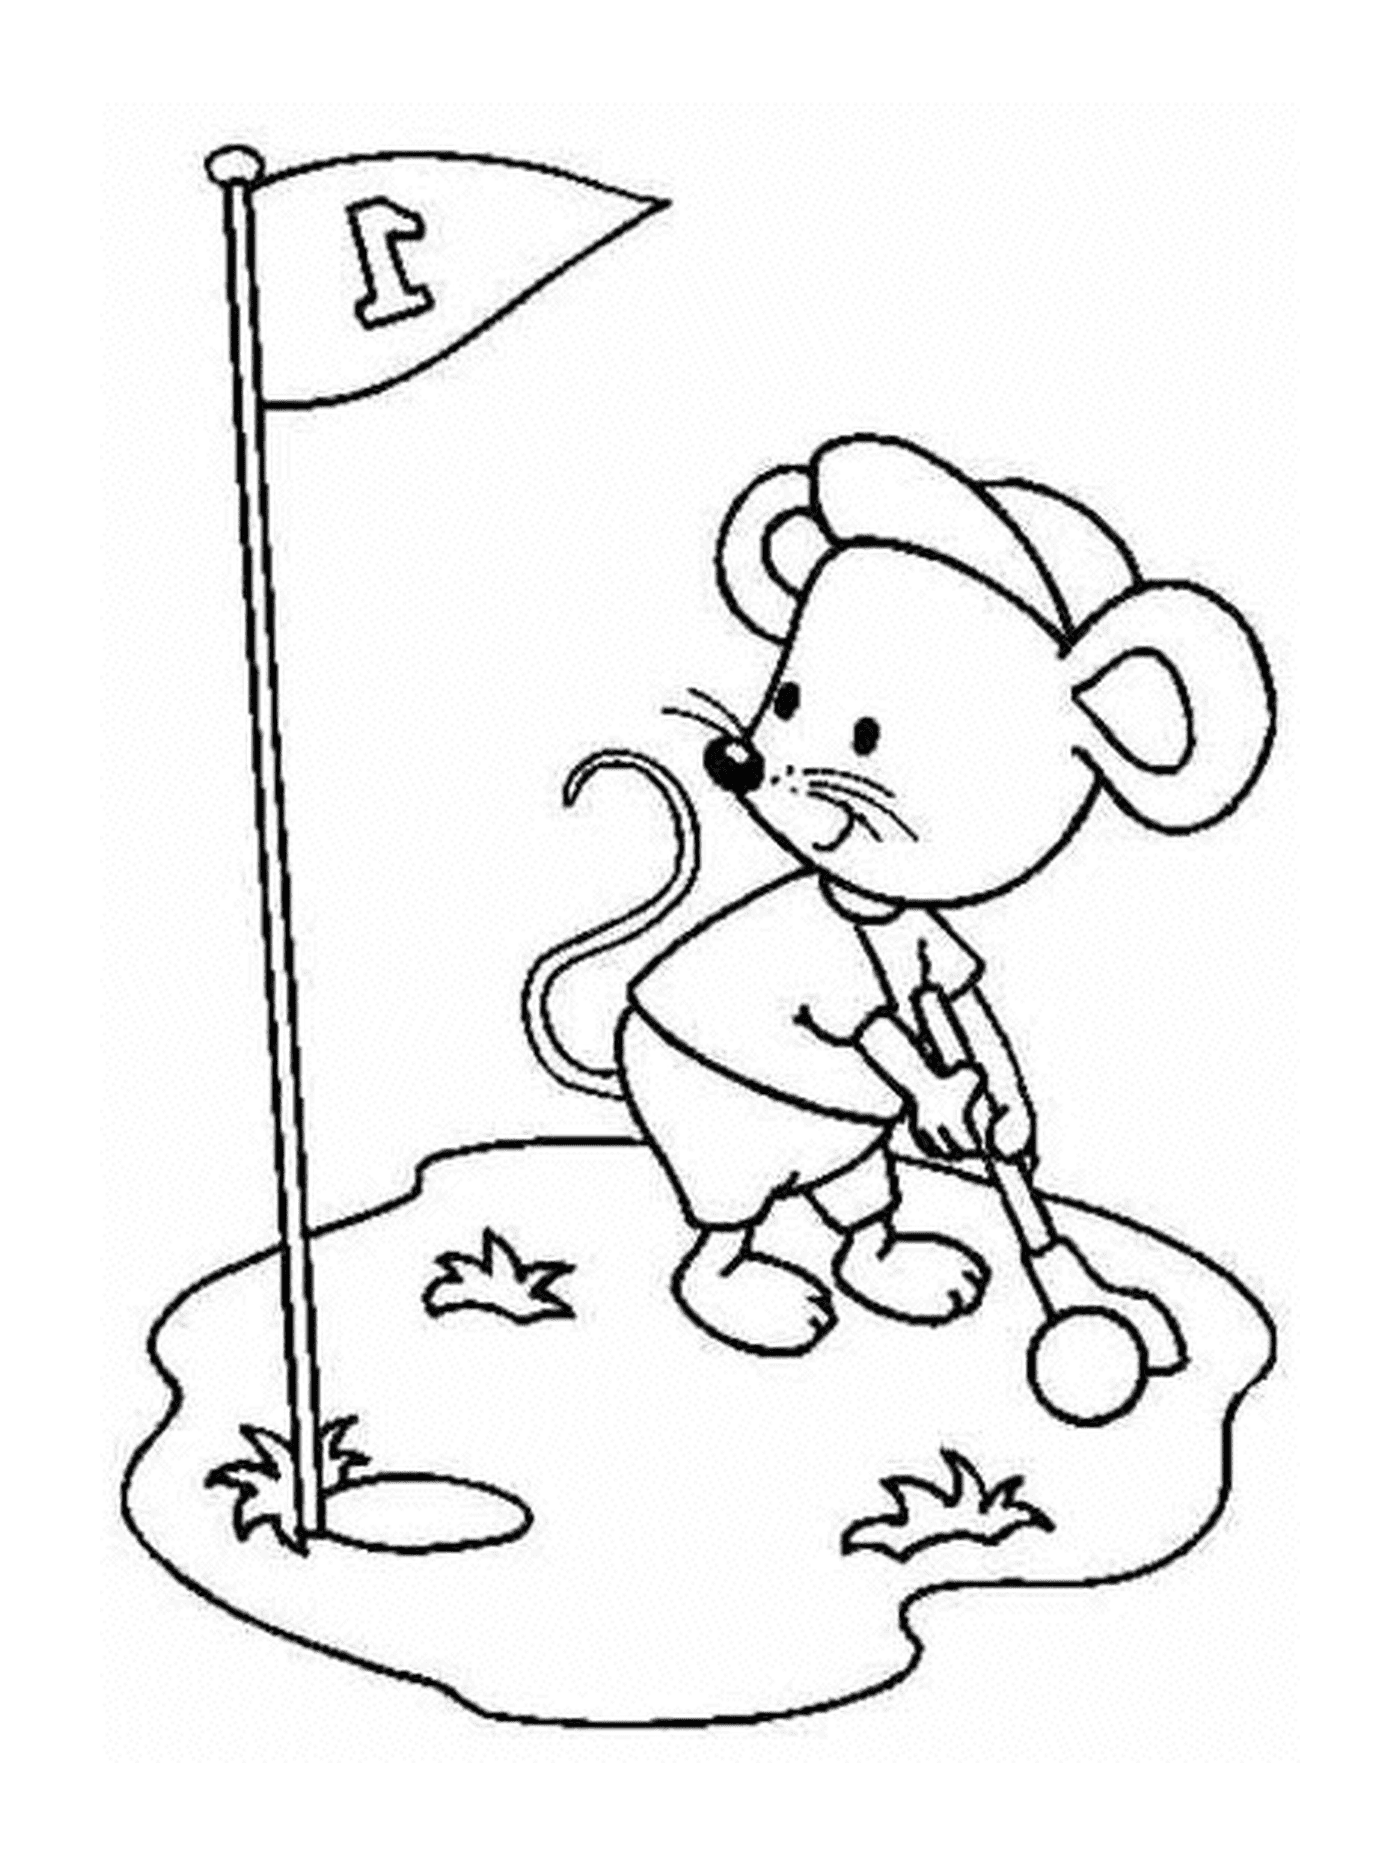  Eine Maus spielt Golf 